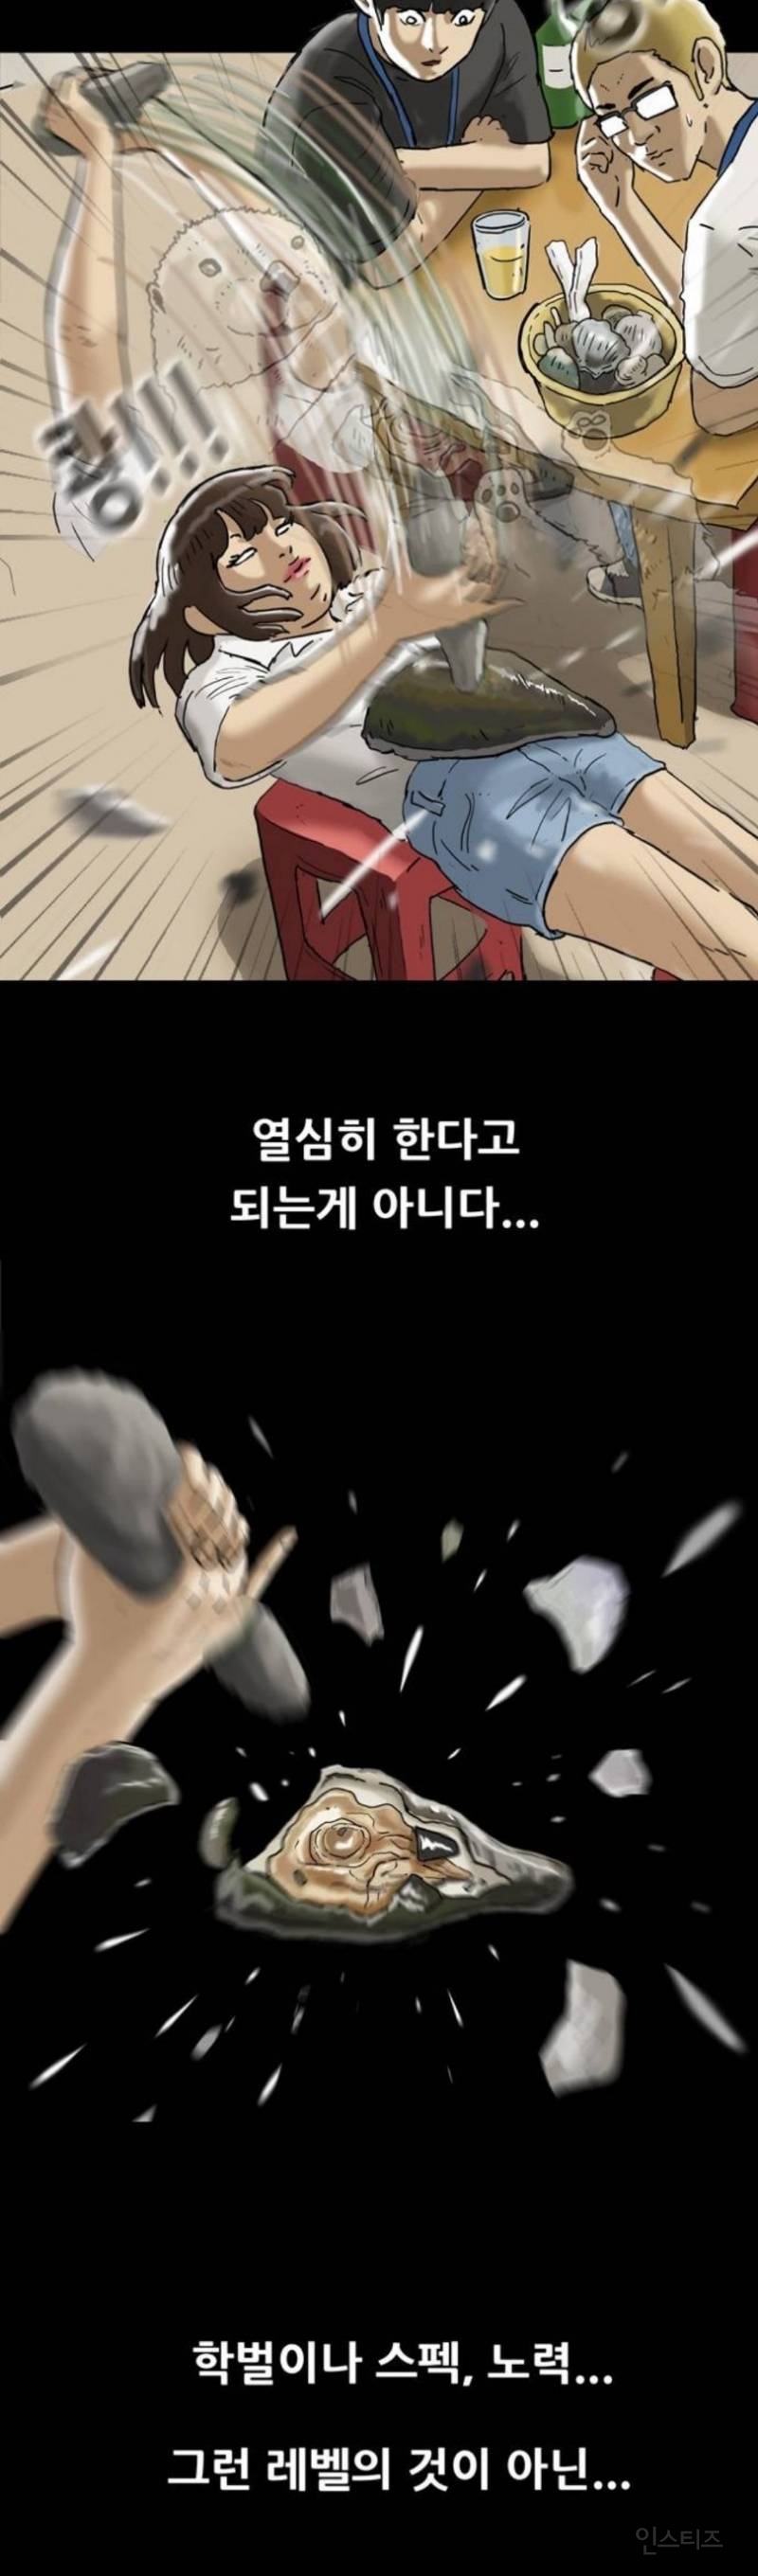 기안84 웹툰 '복학왕', 2회만에 여혐 논란? 여자 배 위에 조개를... | 인스티즈